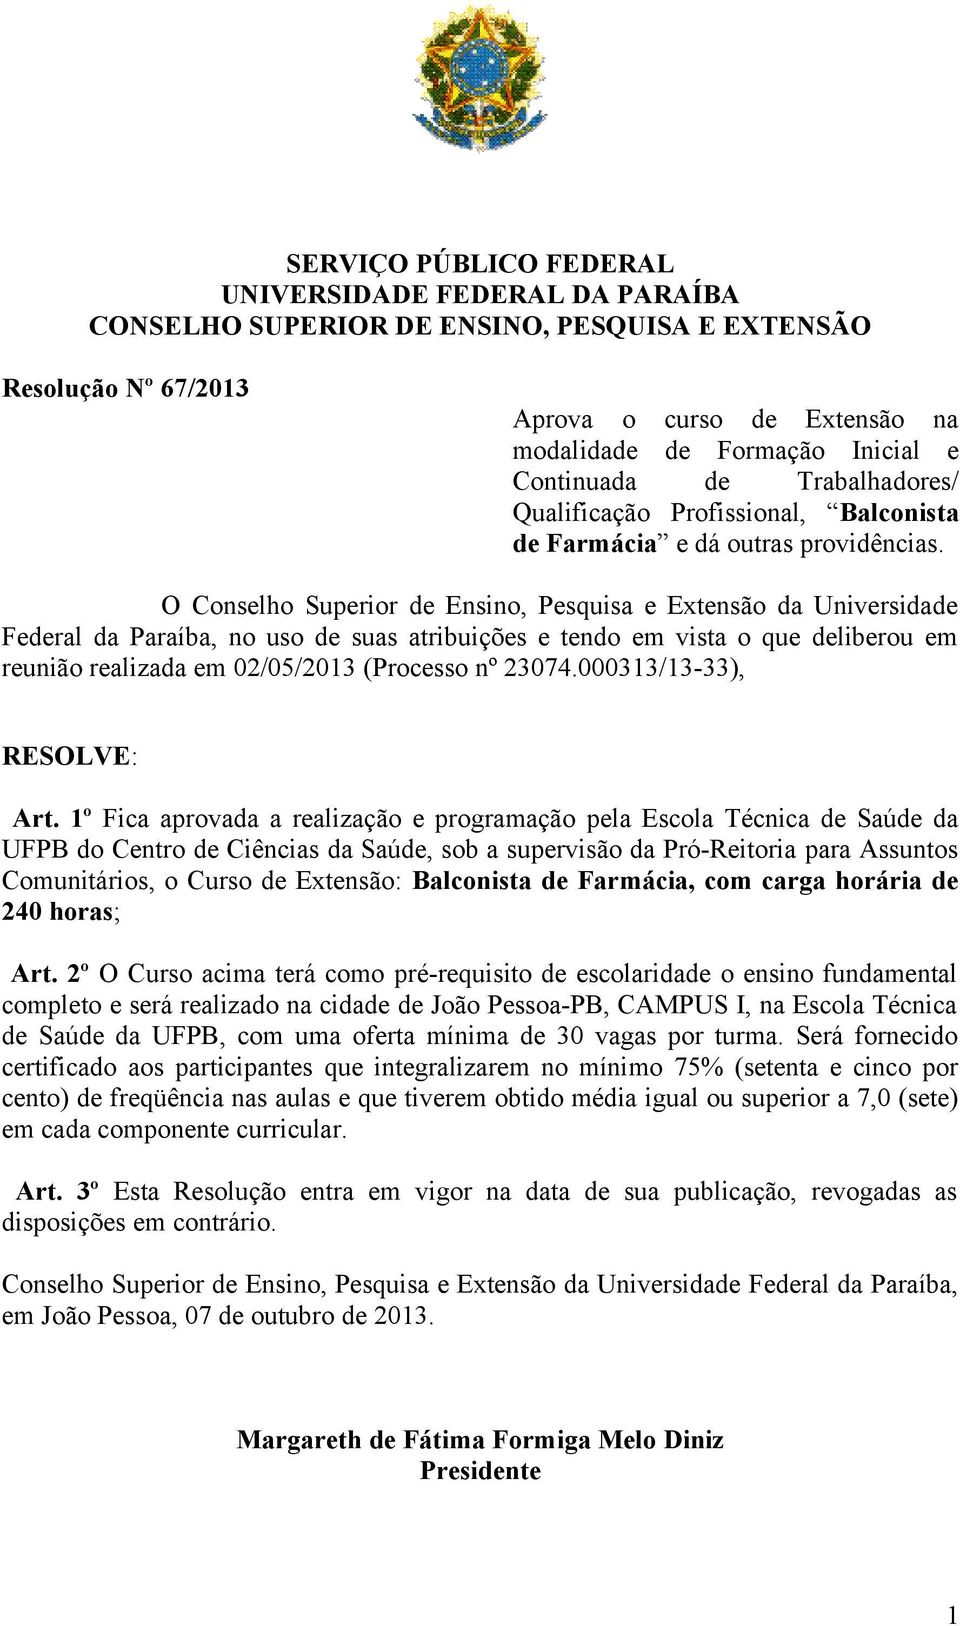 O Conselho Superior de Ensino, Pesquisa e Extensão da Universidade Federal da Paraíba, no uso de suas atribuições e tendo em vista o que deliberou em reunião realizada em 02/05/2013 (Processo nº